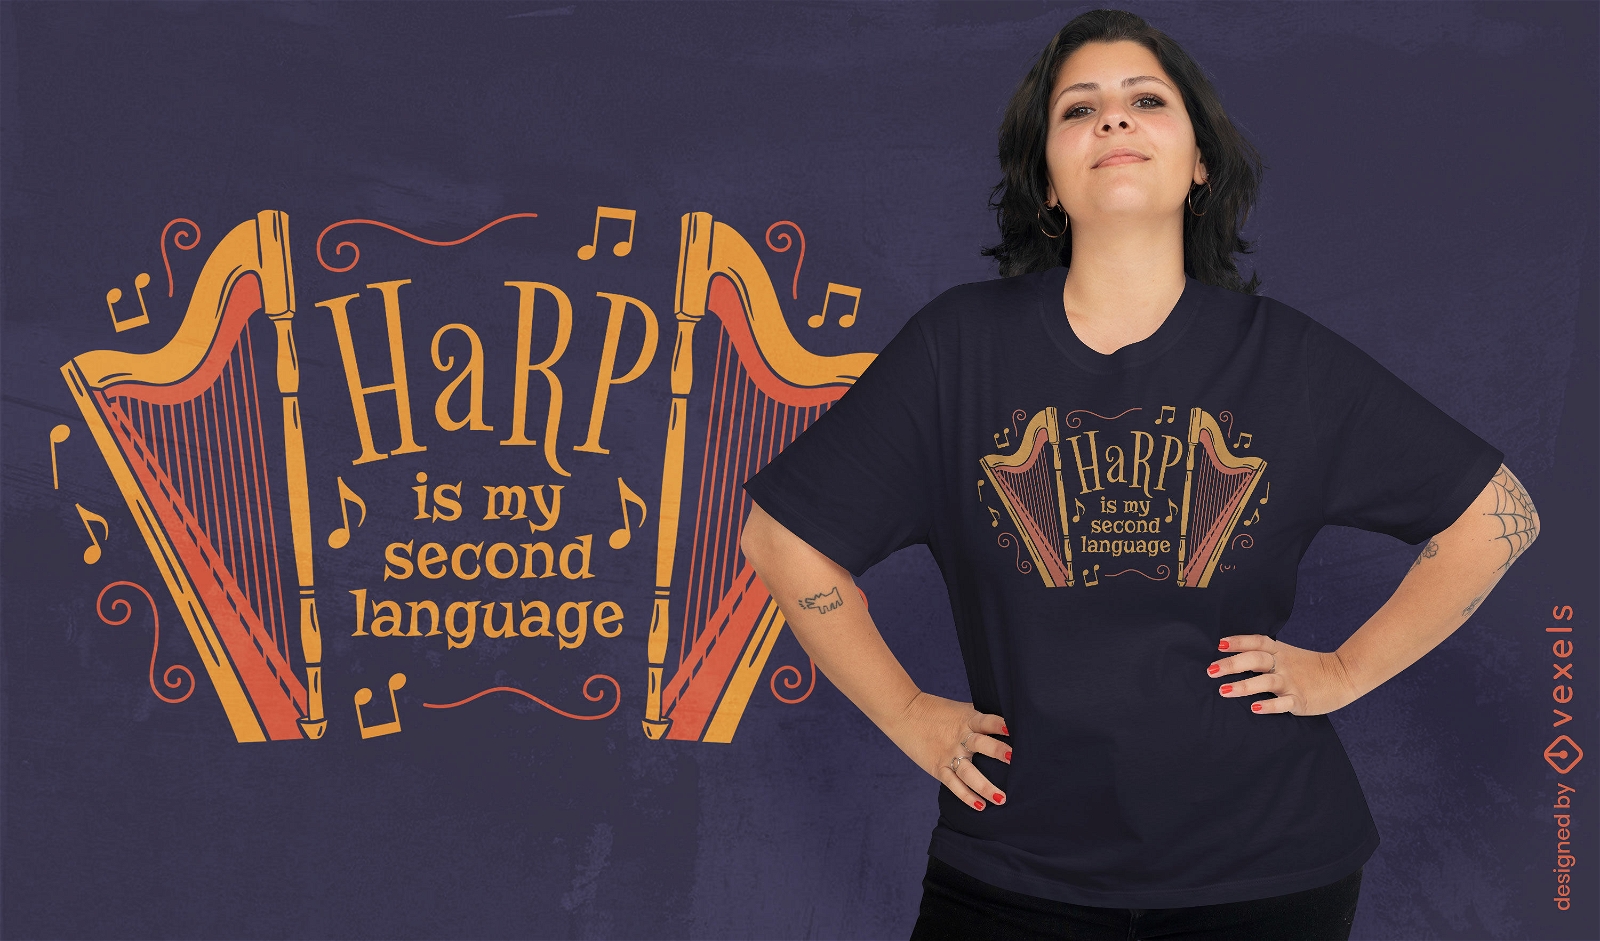 Harp quote t-shirt design